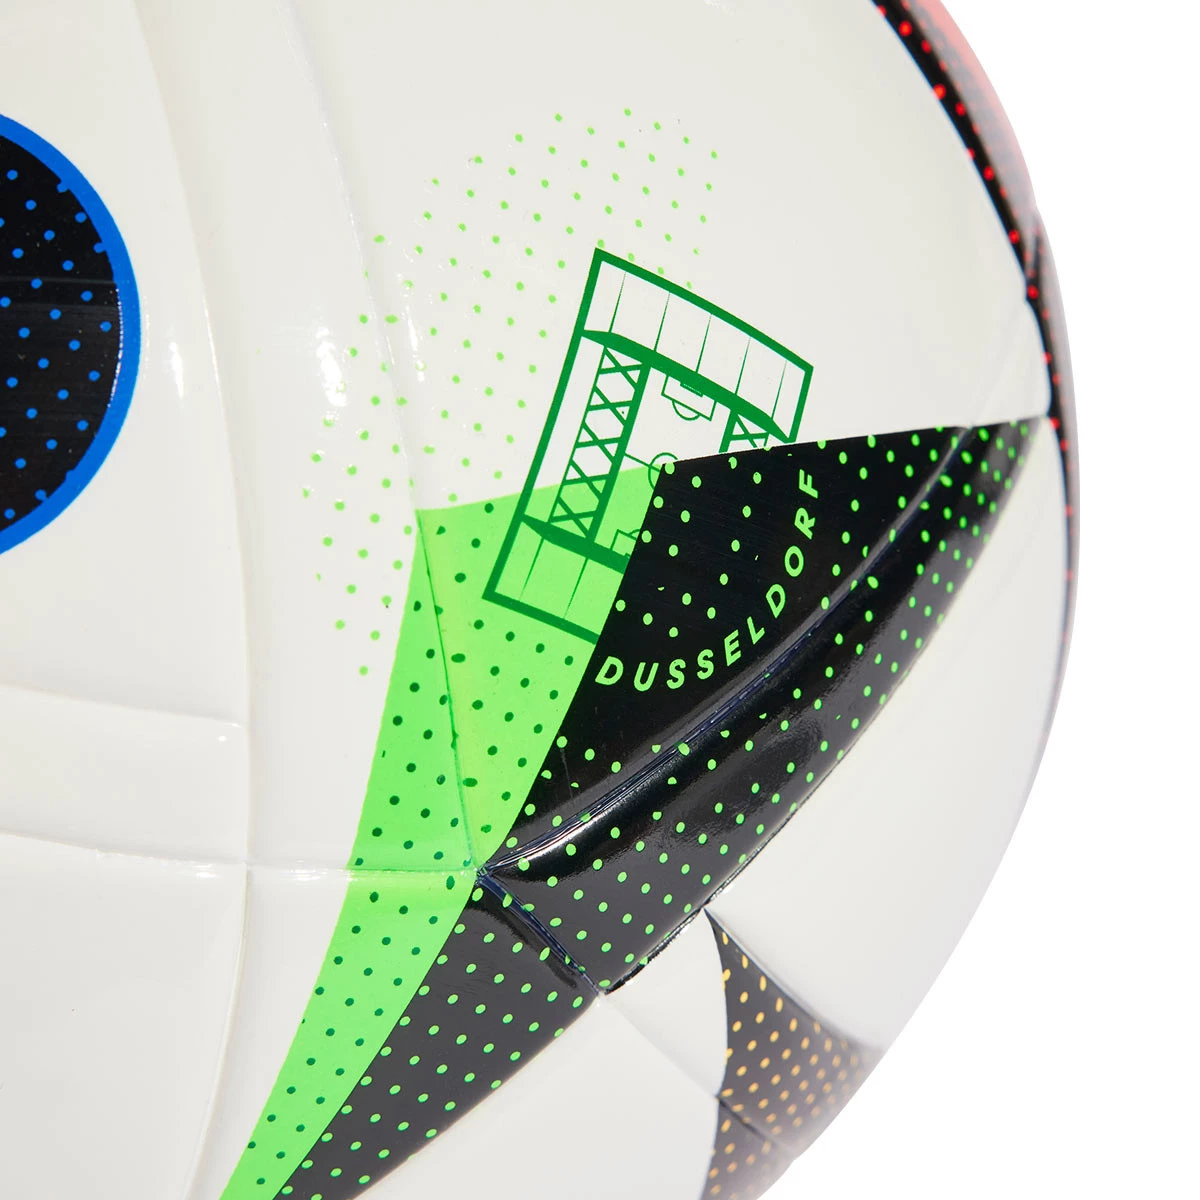 Adidas presenta 'Fussballliebe', el balón oficial para la Eurocopa